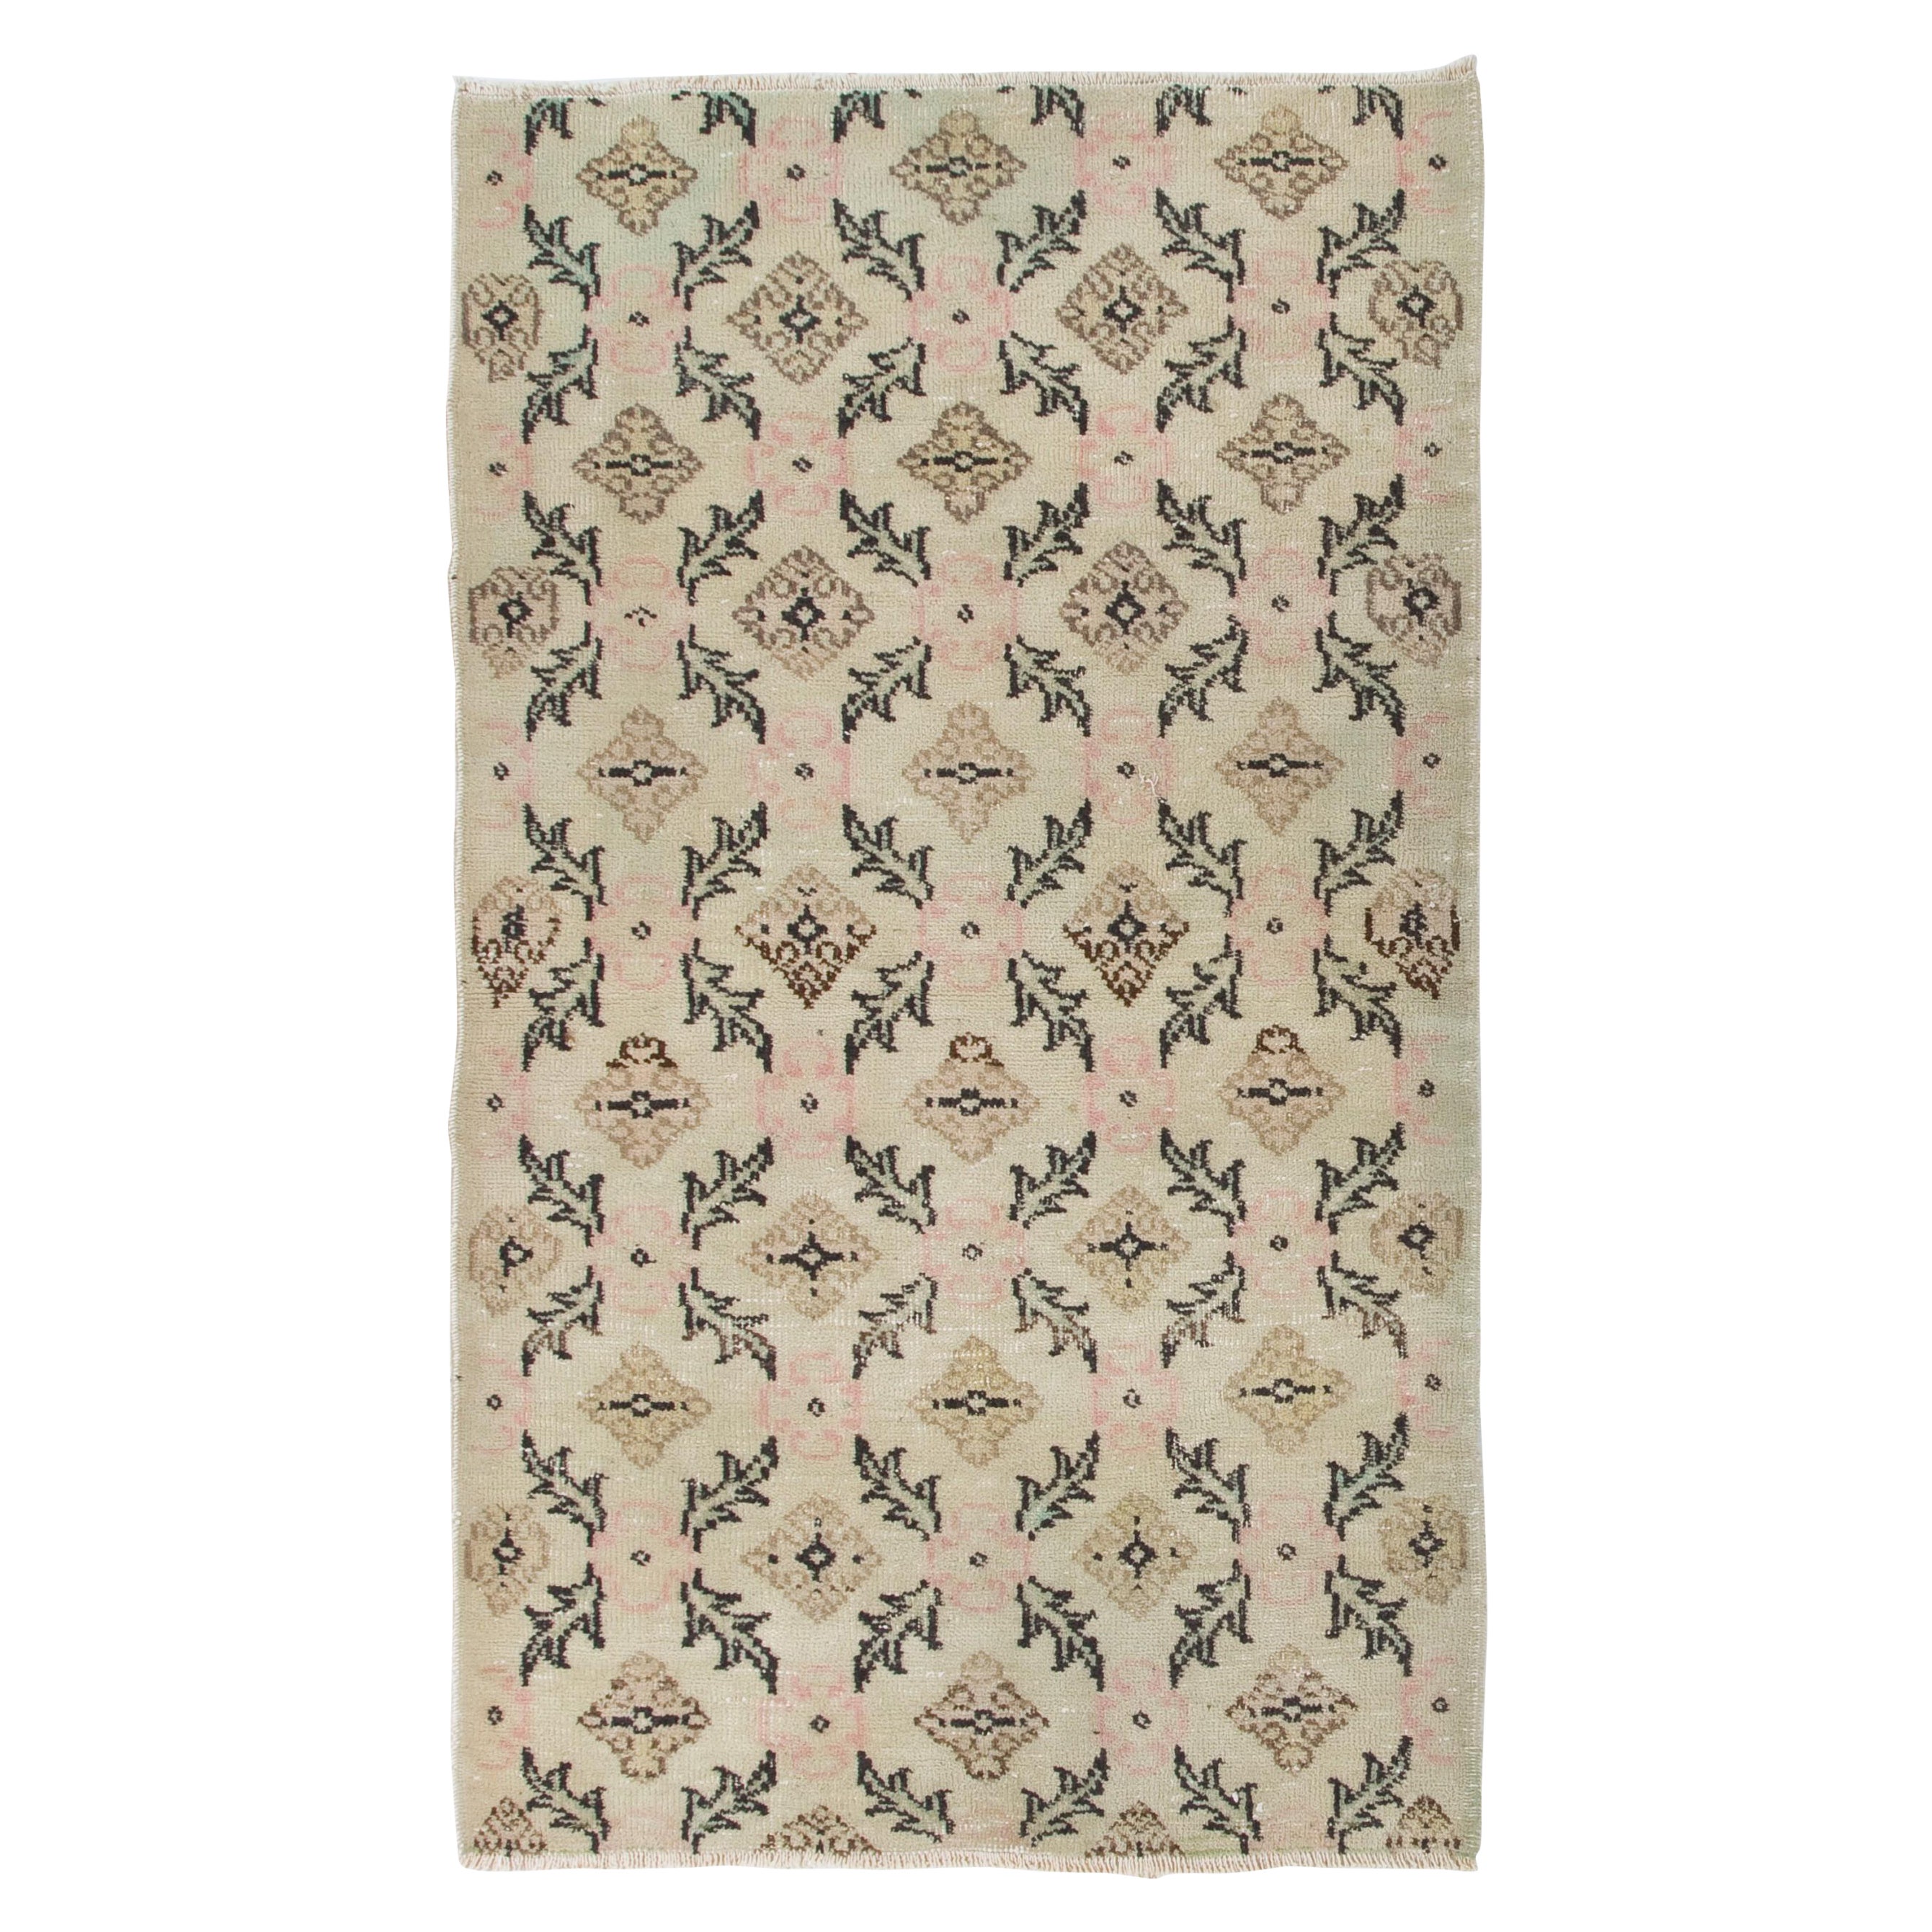 3.8x6.4 Ft Vintage Floral Handmade Teppich in Beige, Brown, Schwarz, Grün und Rosa im Angebot